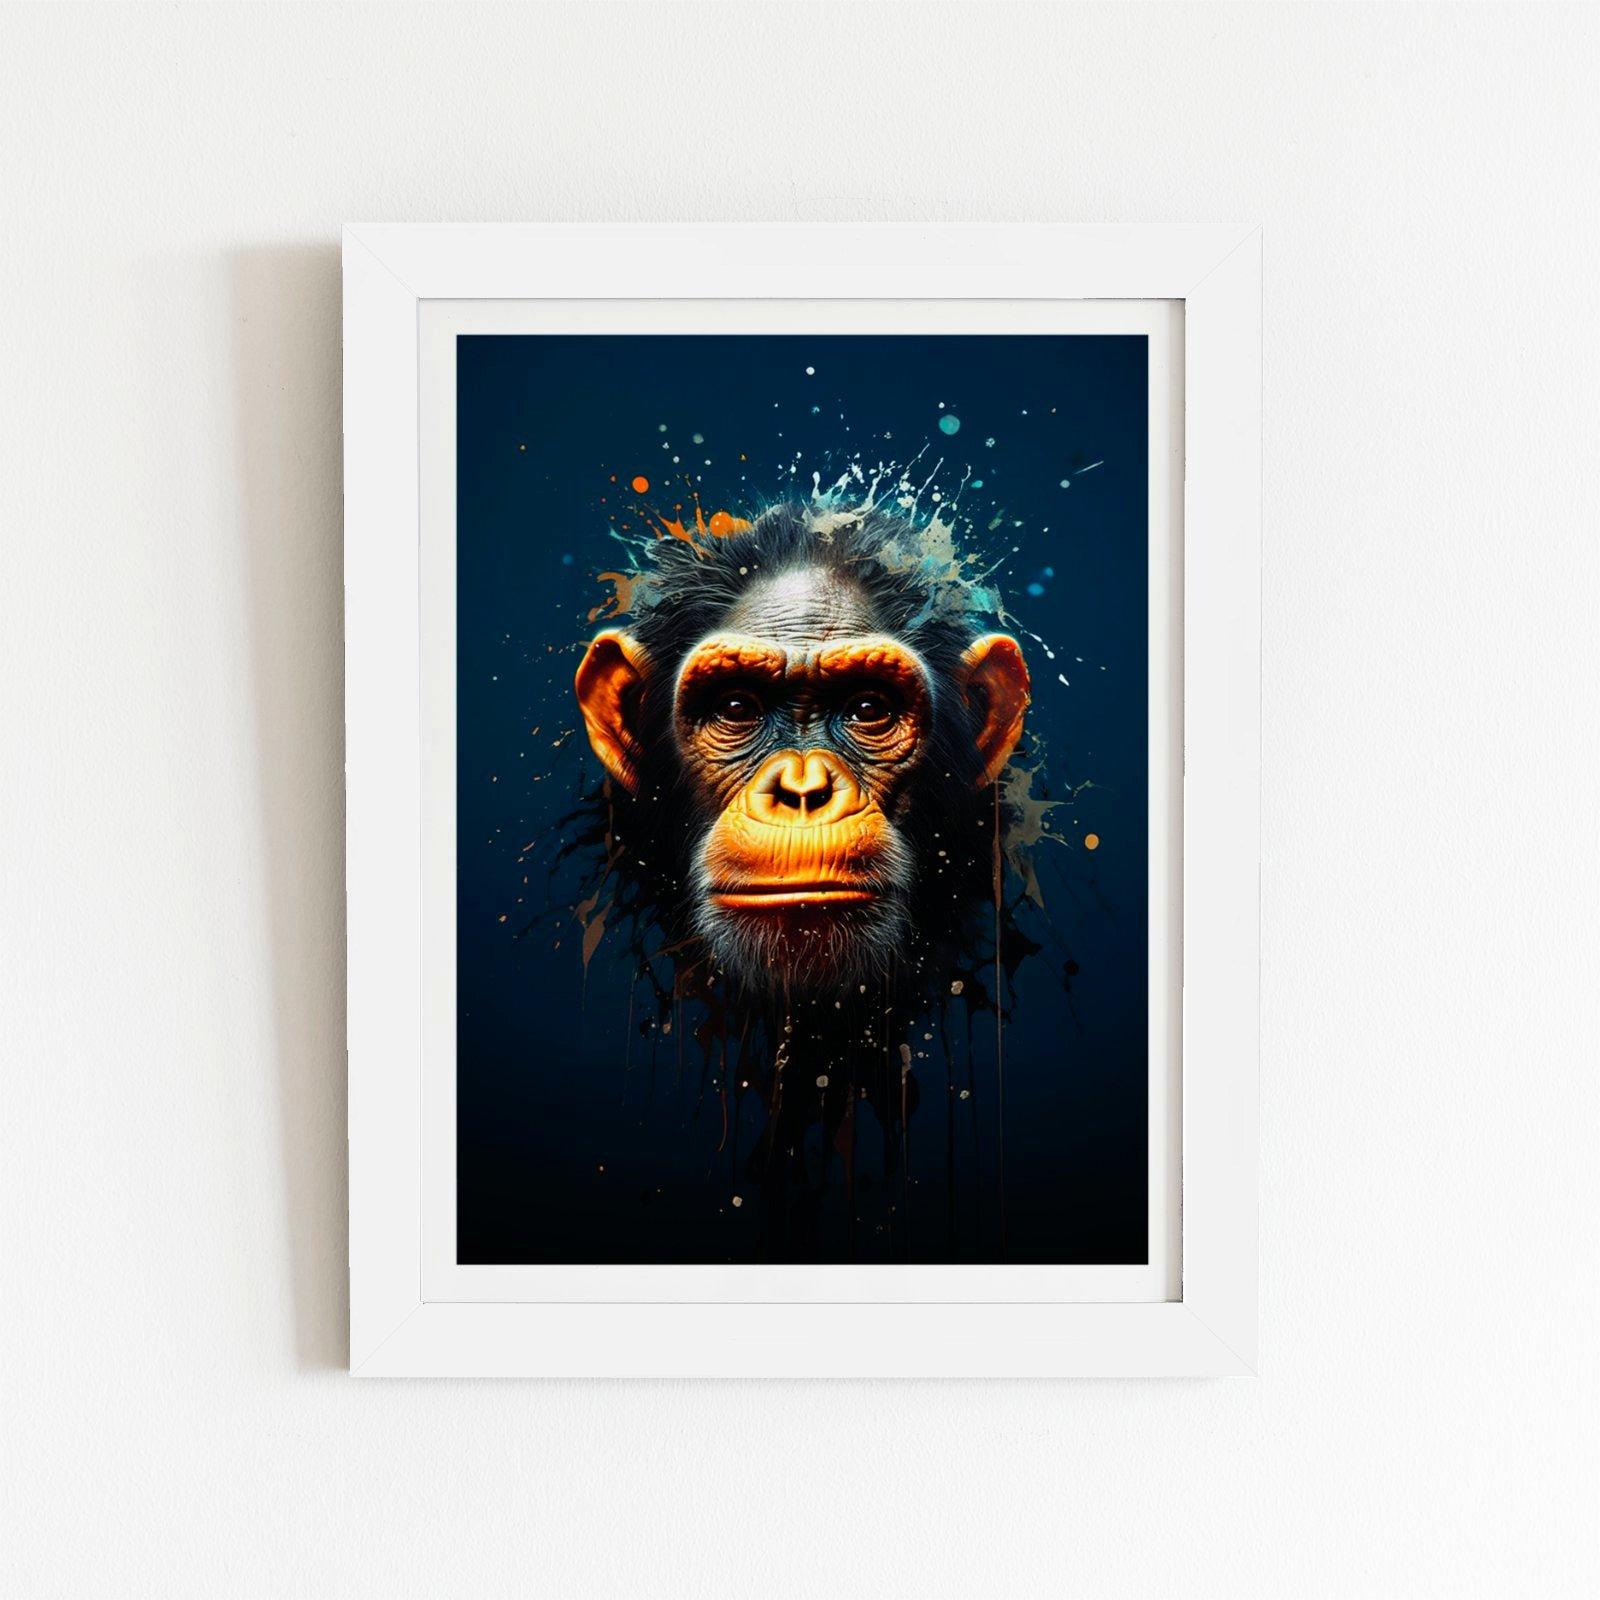 Splashart Realistic Monkey Face Framed Art Print